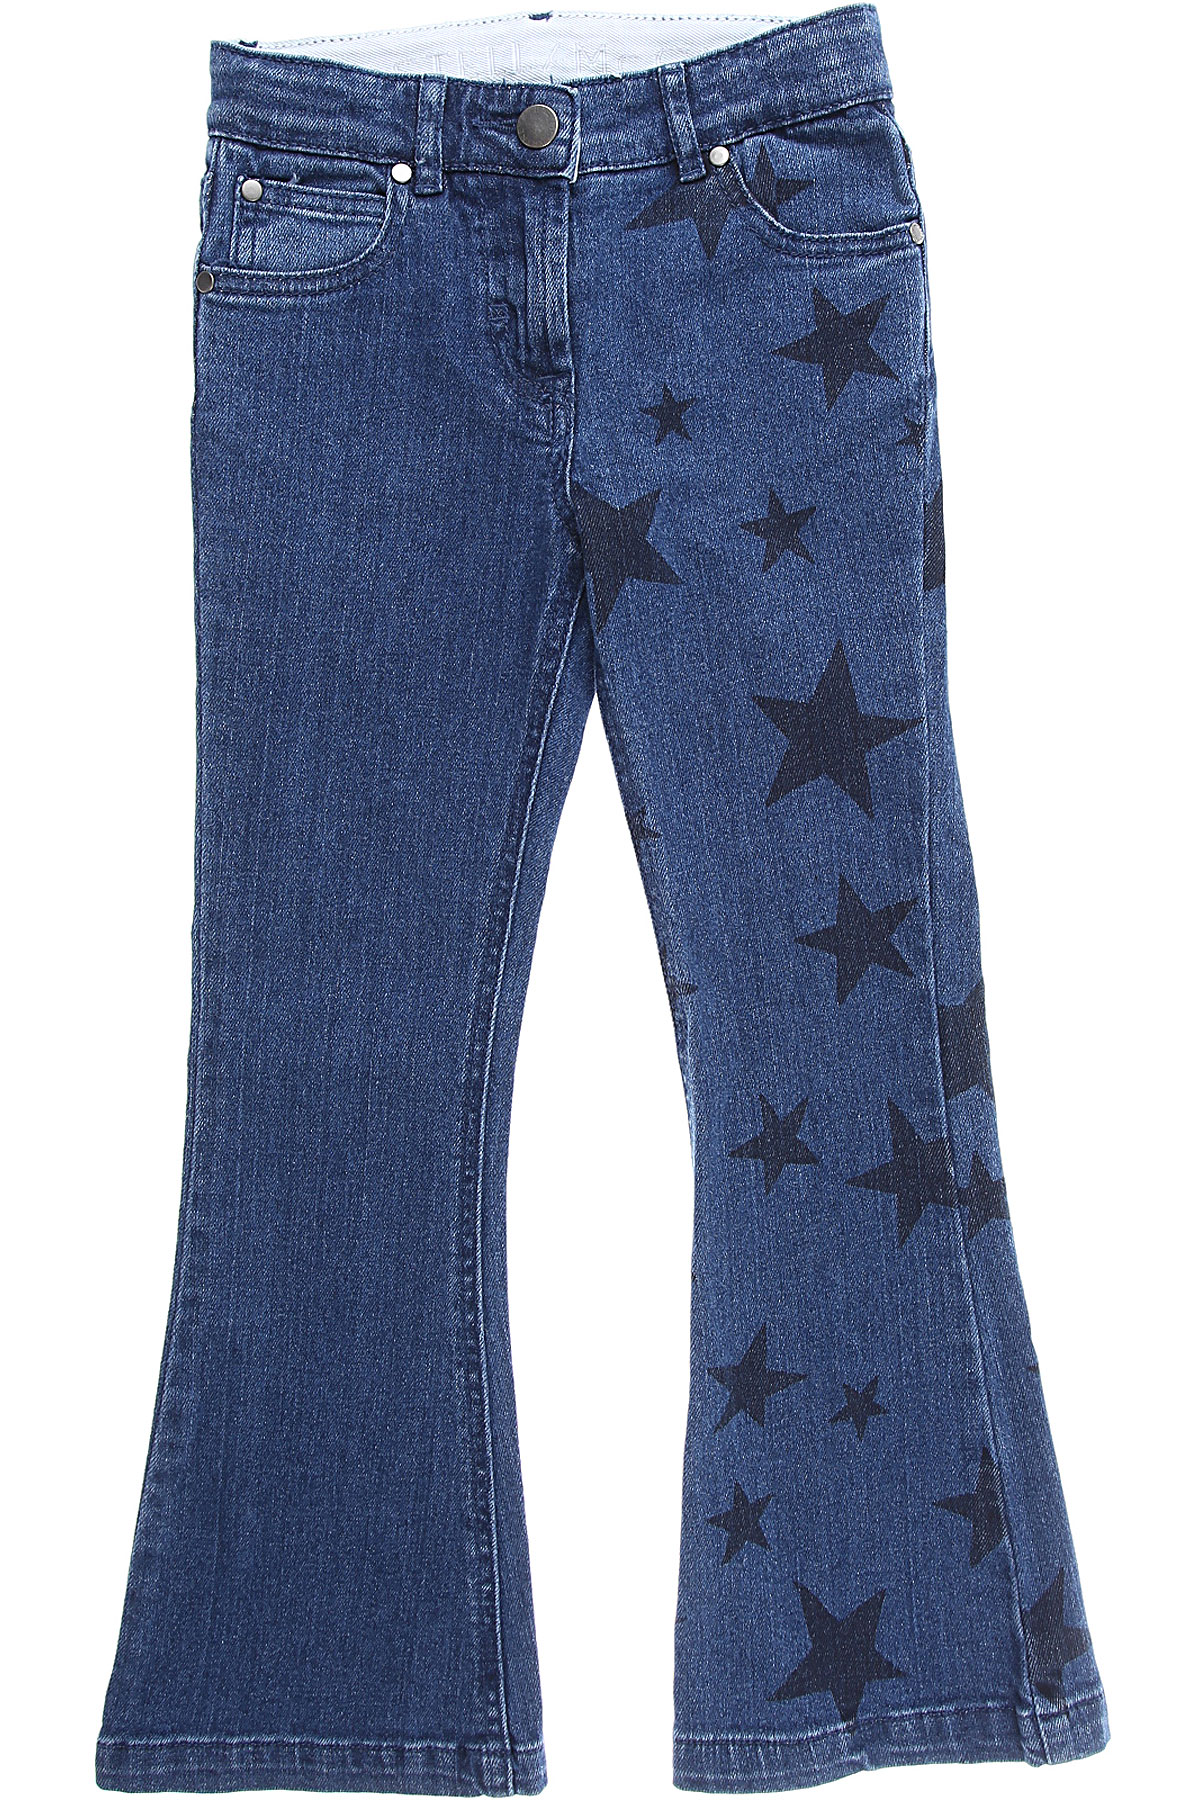 Stella McCartney Kinder Jeans für Mädchen Günstig im Sale, Denim Blau, Baumwolle, 2017, 10Y 12Y 14Y 16Y 2Y 8Y